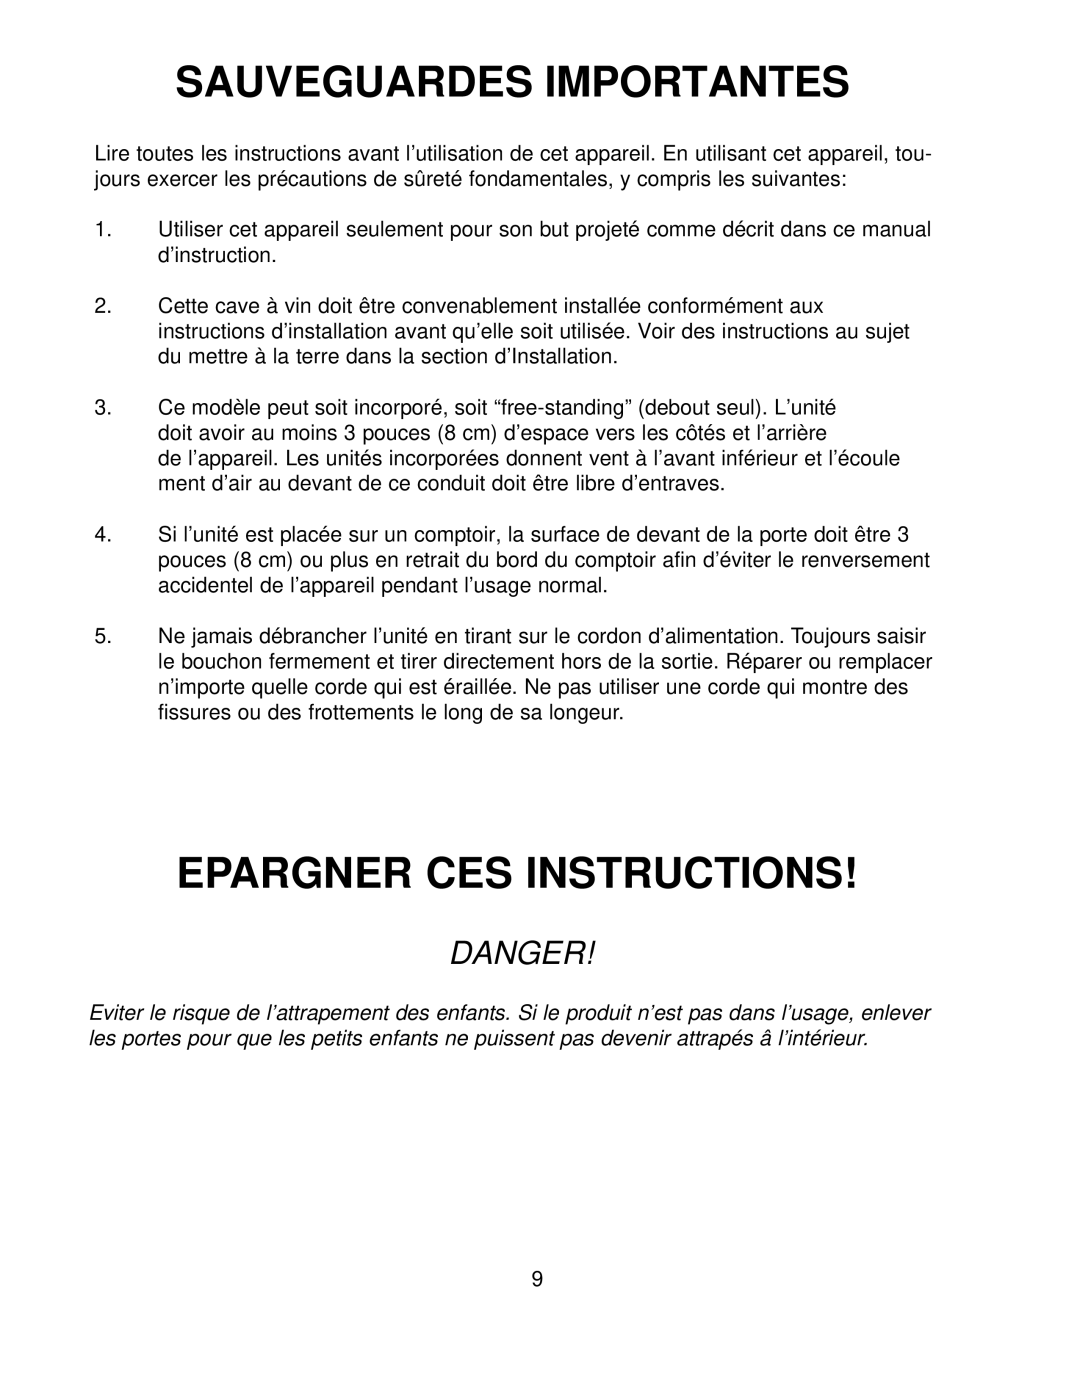 Franklin Industries, L.L.C FCW100 manual Sauveguardes Importantes, Epargner Ces Instructions, Danger 